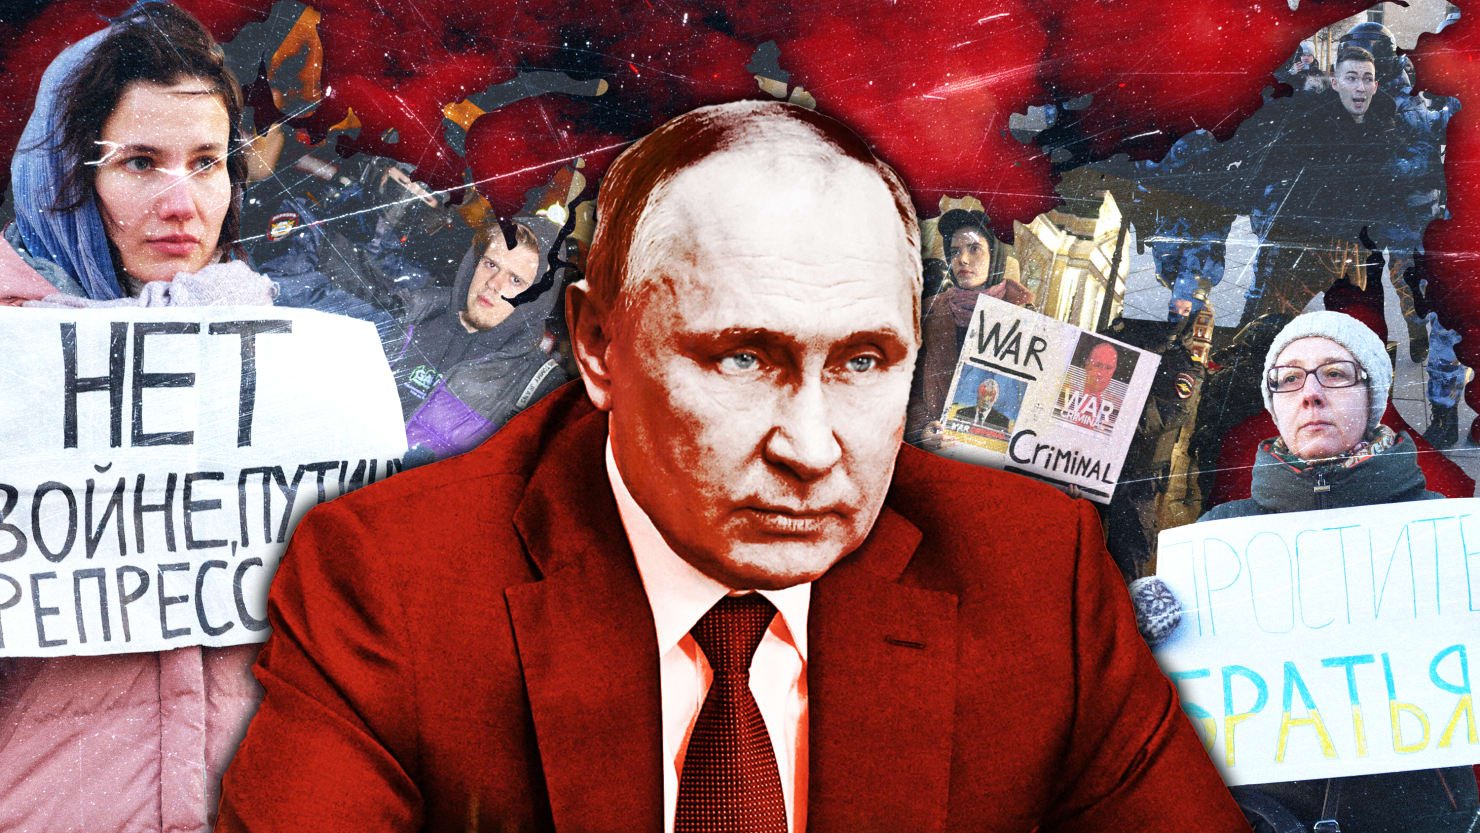 La represión de pánico de Putin en casa muestra que está saliendo